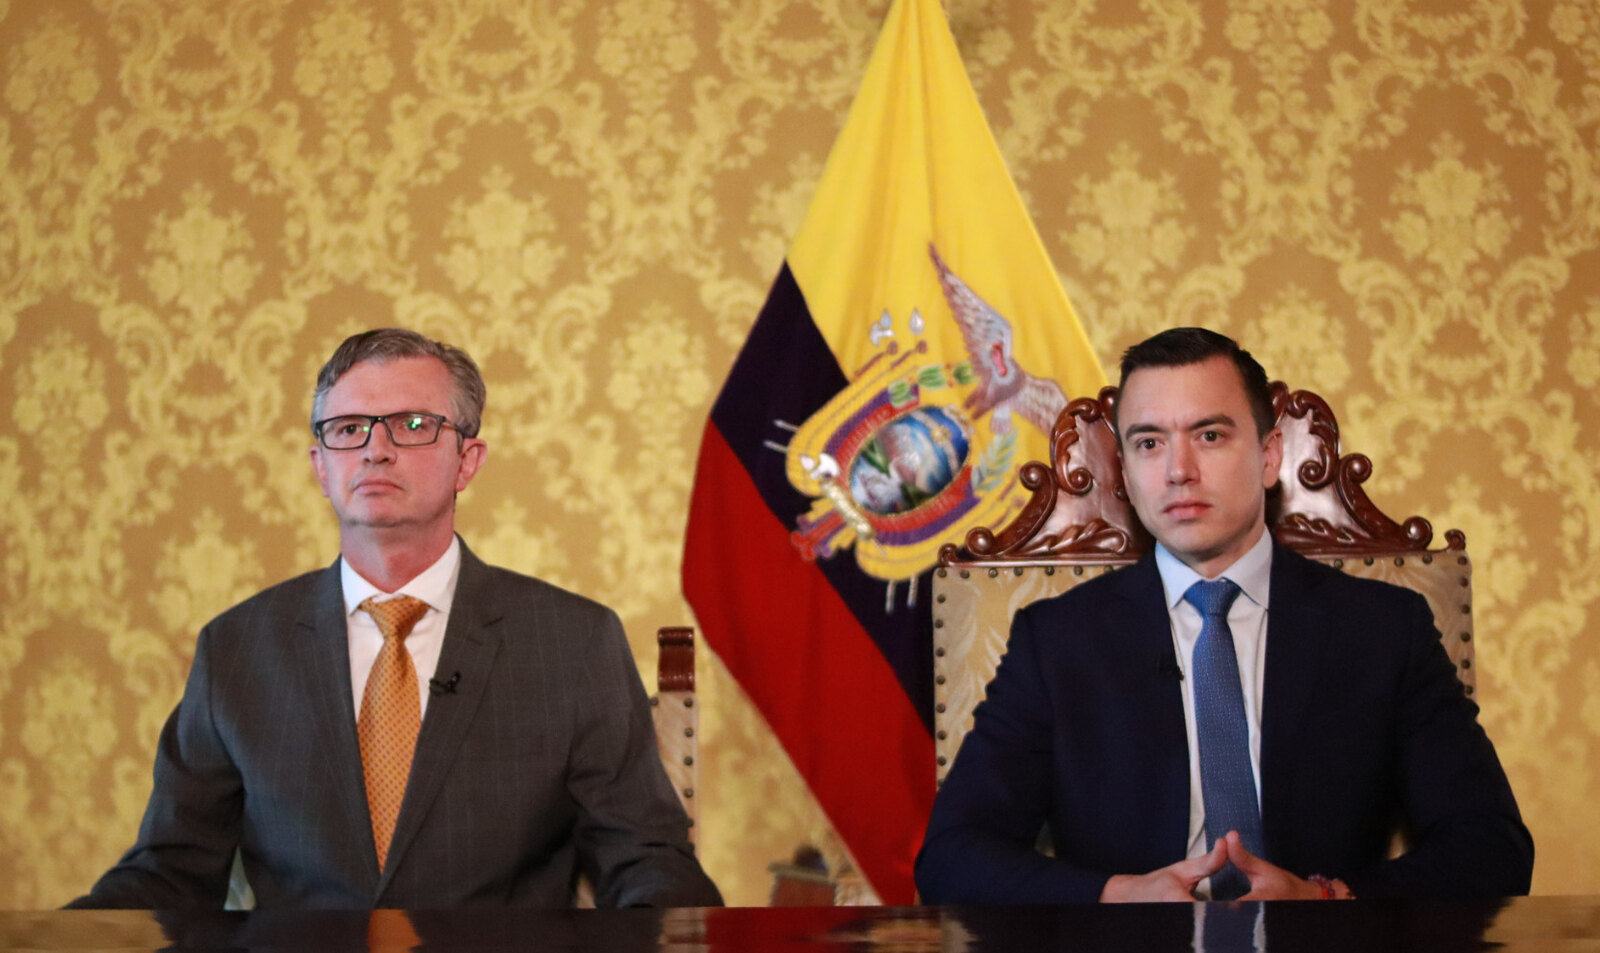 HECHO. El presidente de la República, Daniel Noboa, y su ministro de Economía, Juan Carlos Vega Malo, deben cumplir con el recorte de $1.000 millones en el gasto